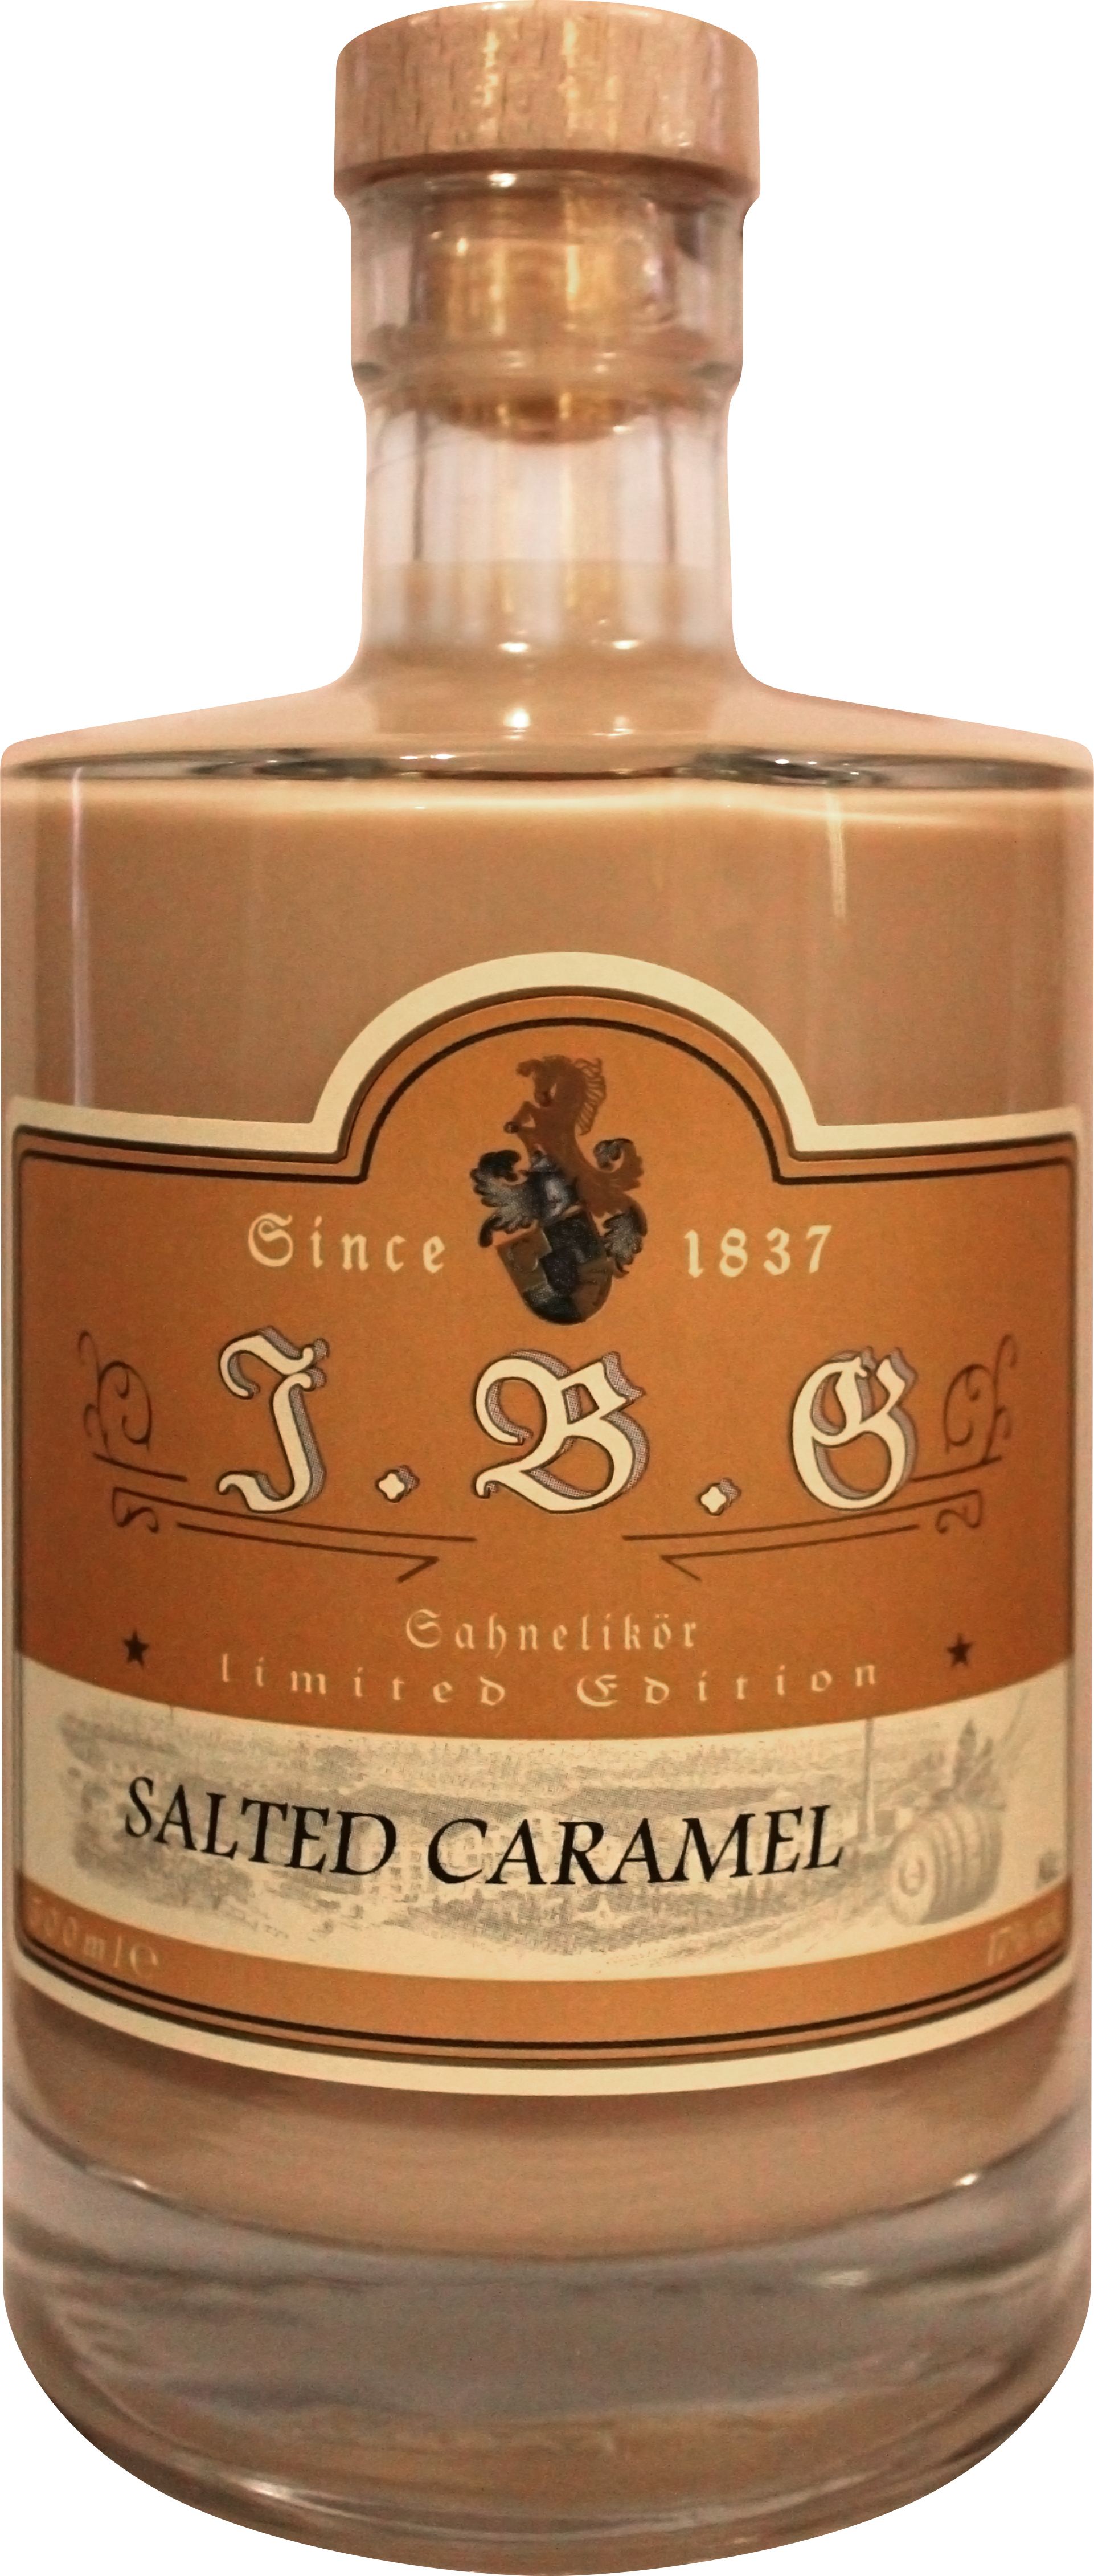 Salted Caramel Sahnelikör 17%vol., 0,5 ltr. | Gutsbrennerei Geuting